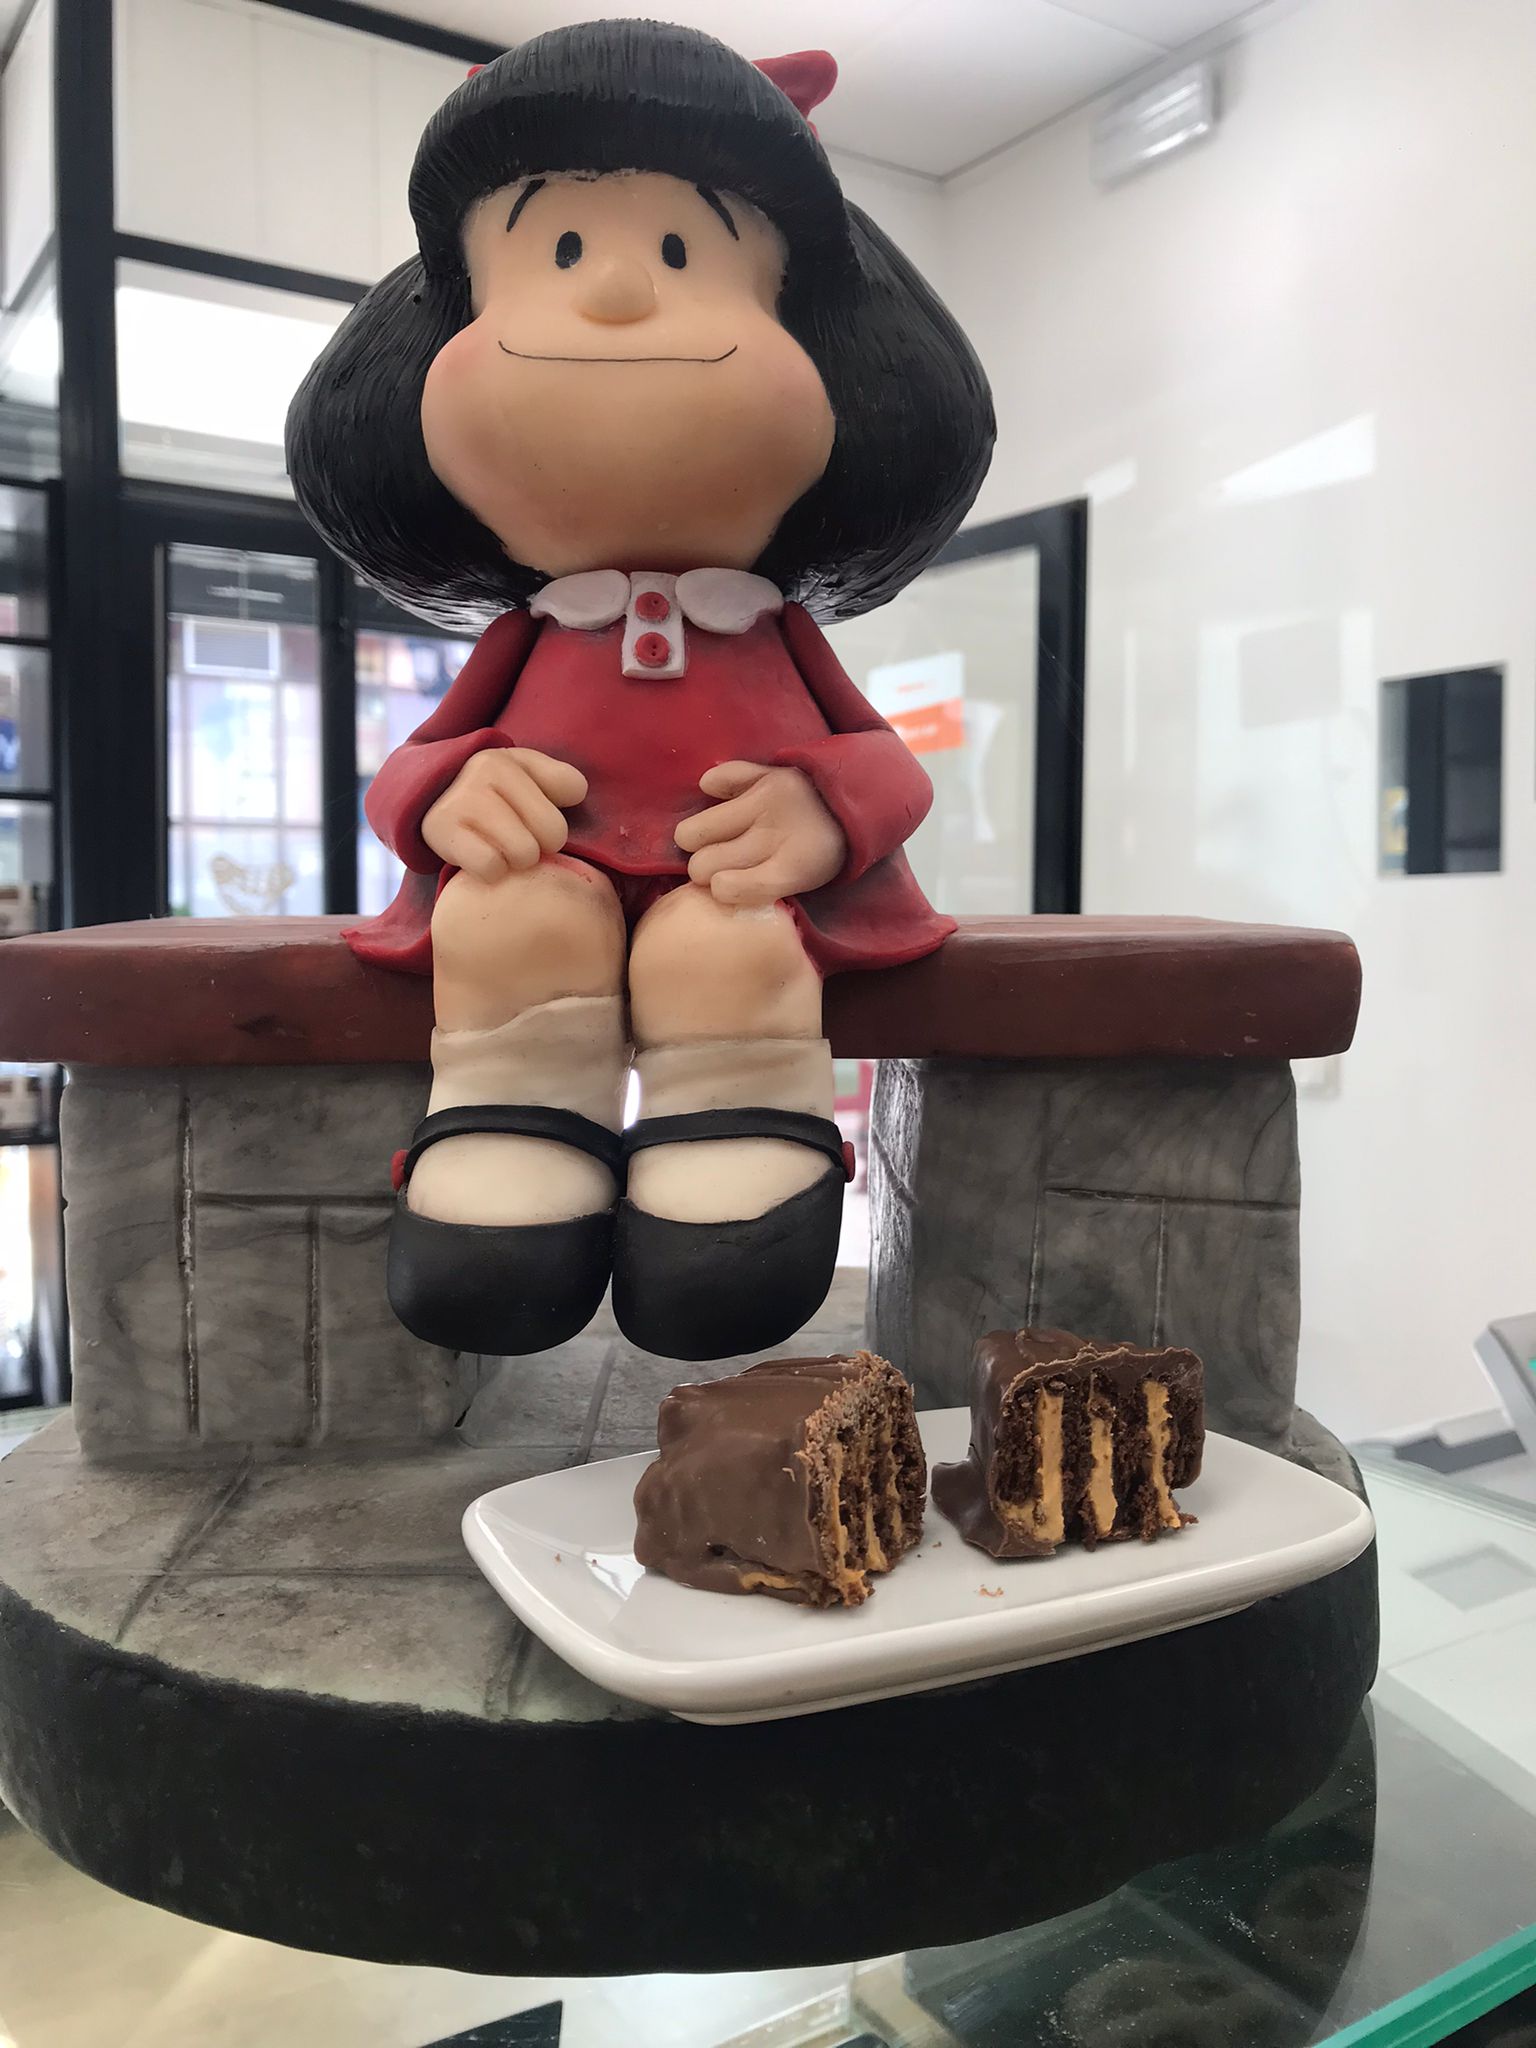 Mafalda Panadería y Pastelería 